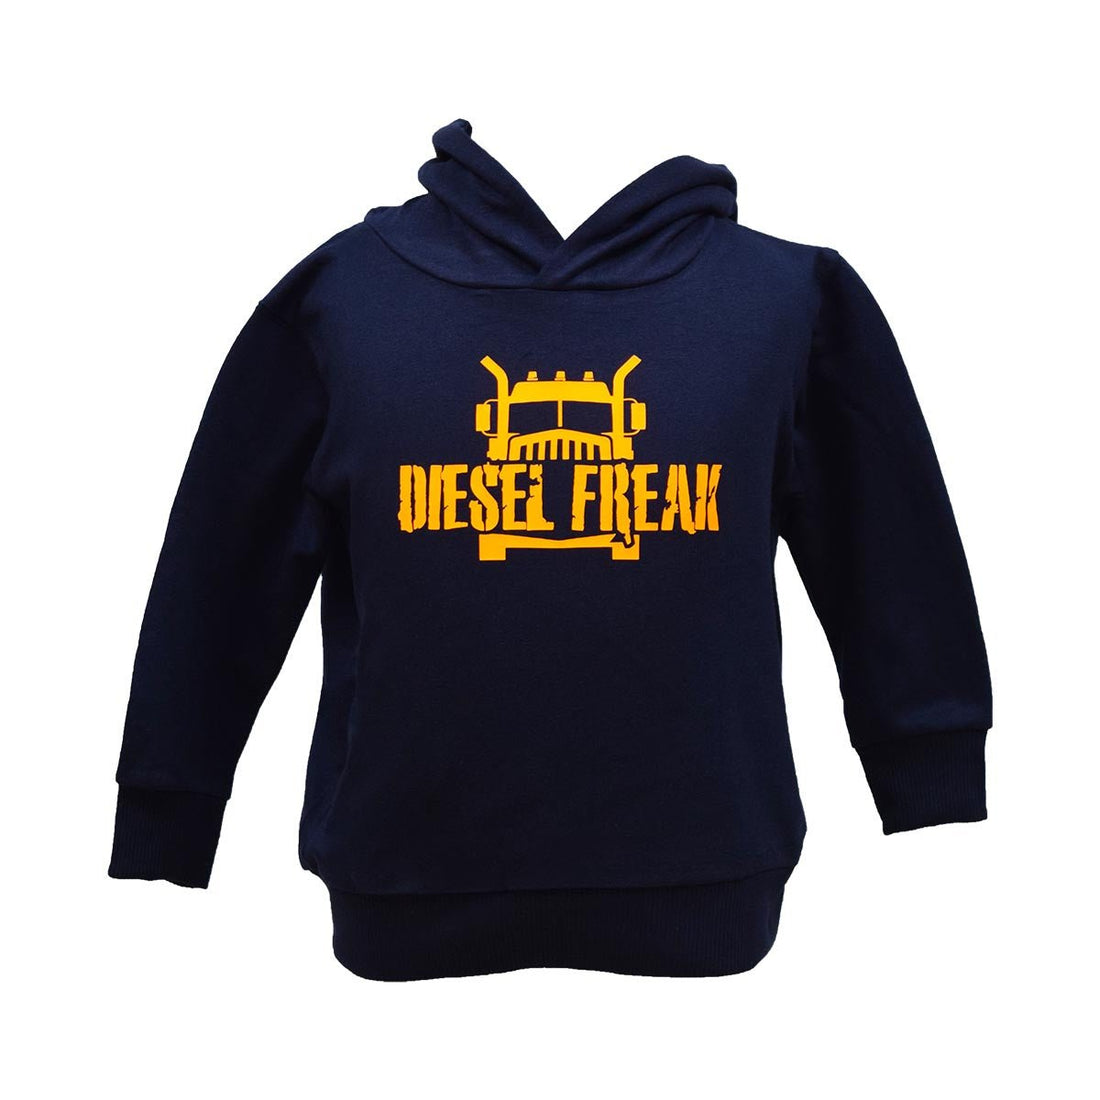 Truckin Freak Navy & Orange Youth Hoodie - Diesel Freak